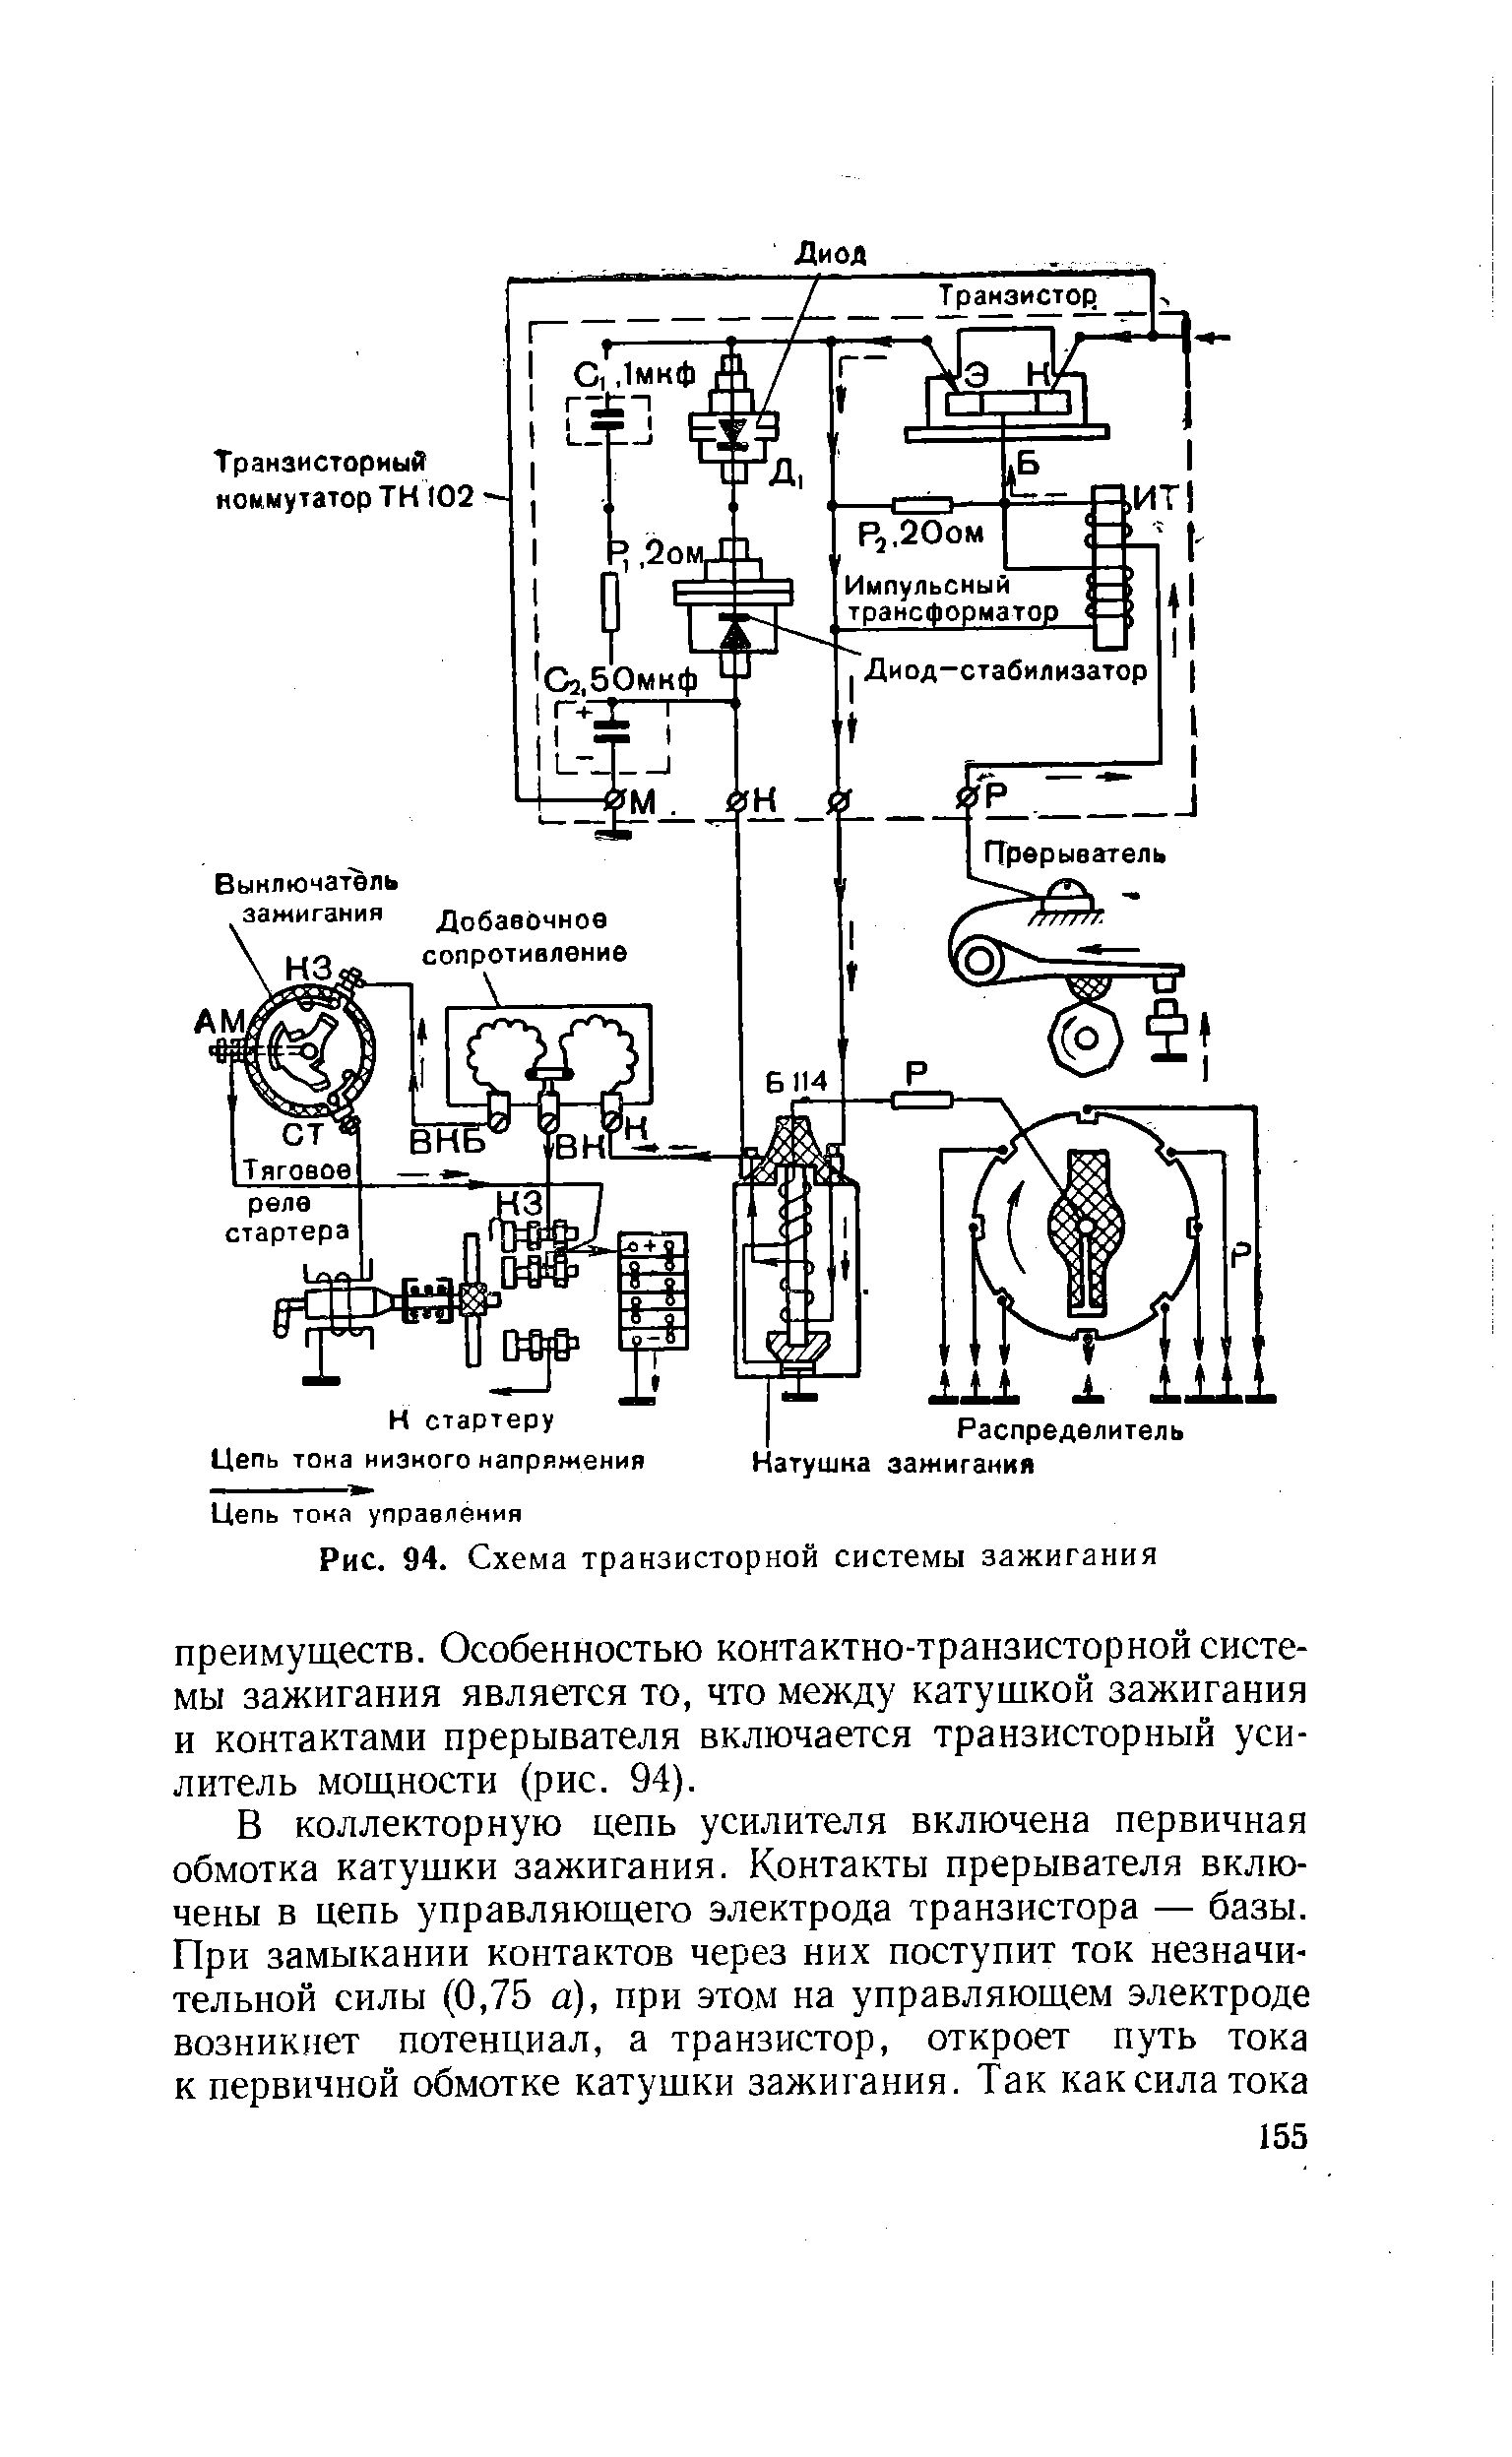 Рис. 94. Схема транзисторной системы зажигания
